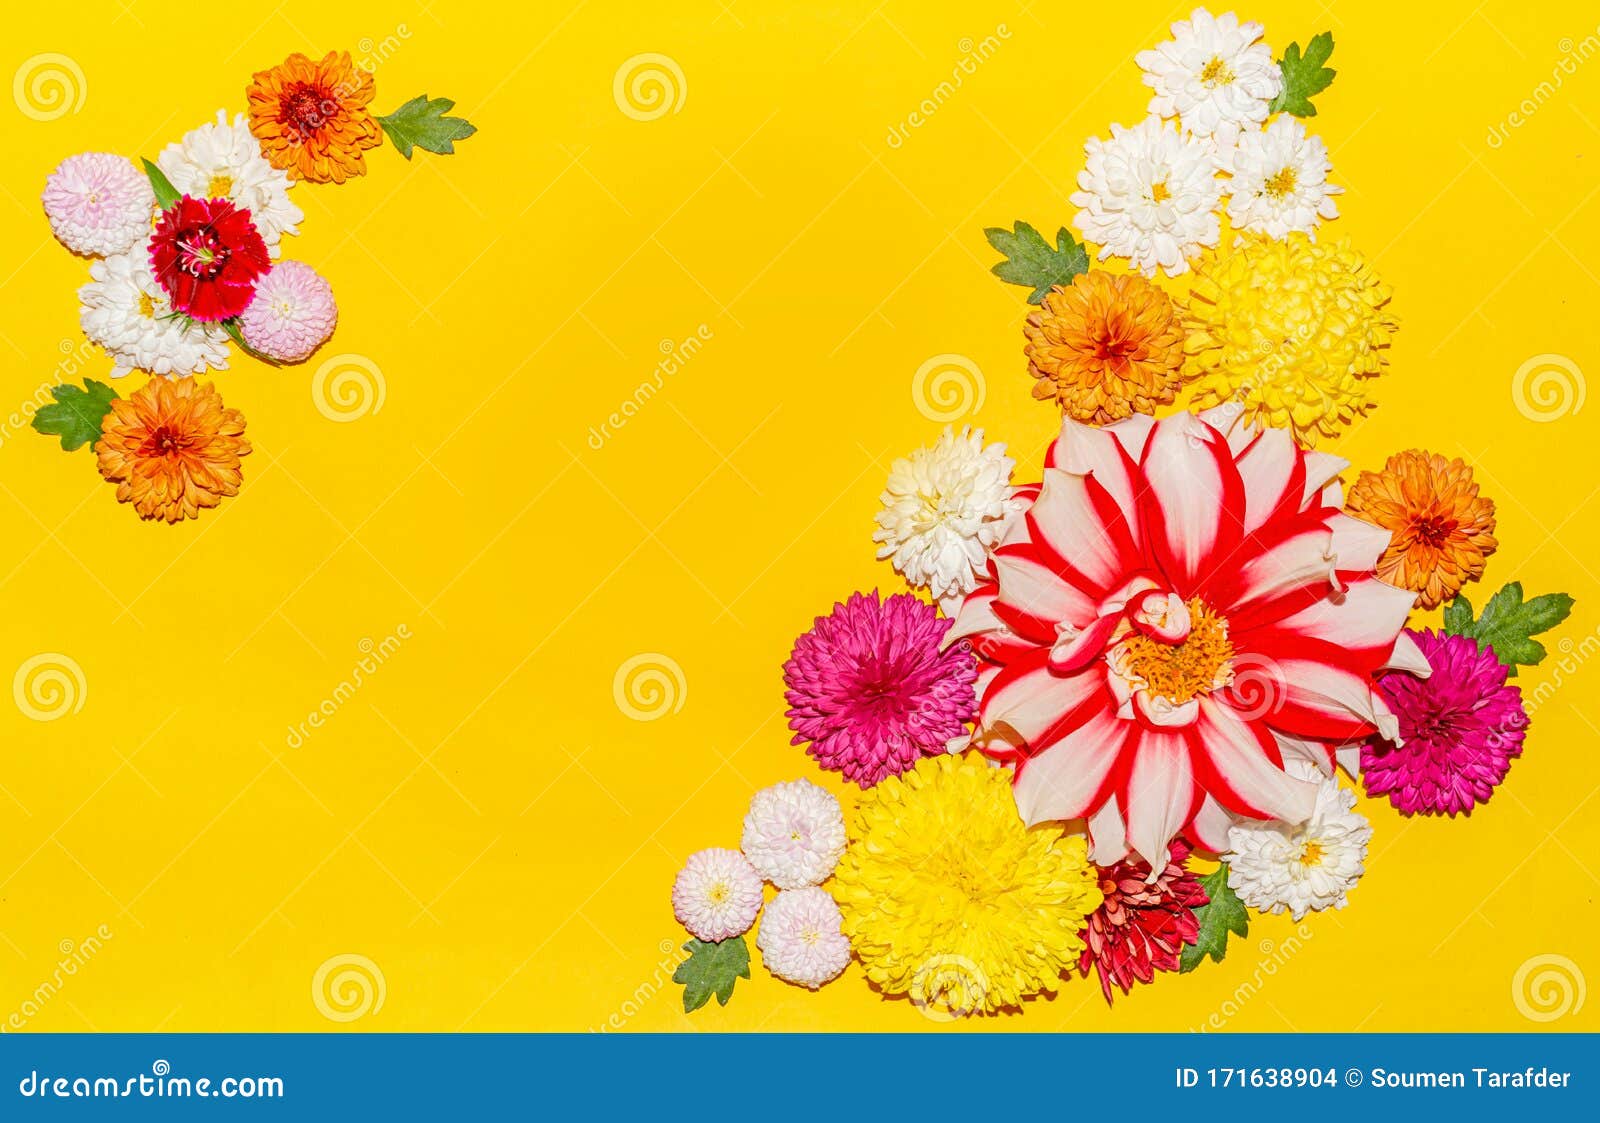 Diferentes Tipos De Crisantemo Colorido Y Flores De Dalia Sobre Fondo  Amarillo Foto de archivo - Imagen de fresco, flor: 171638904